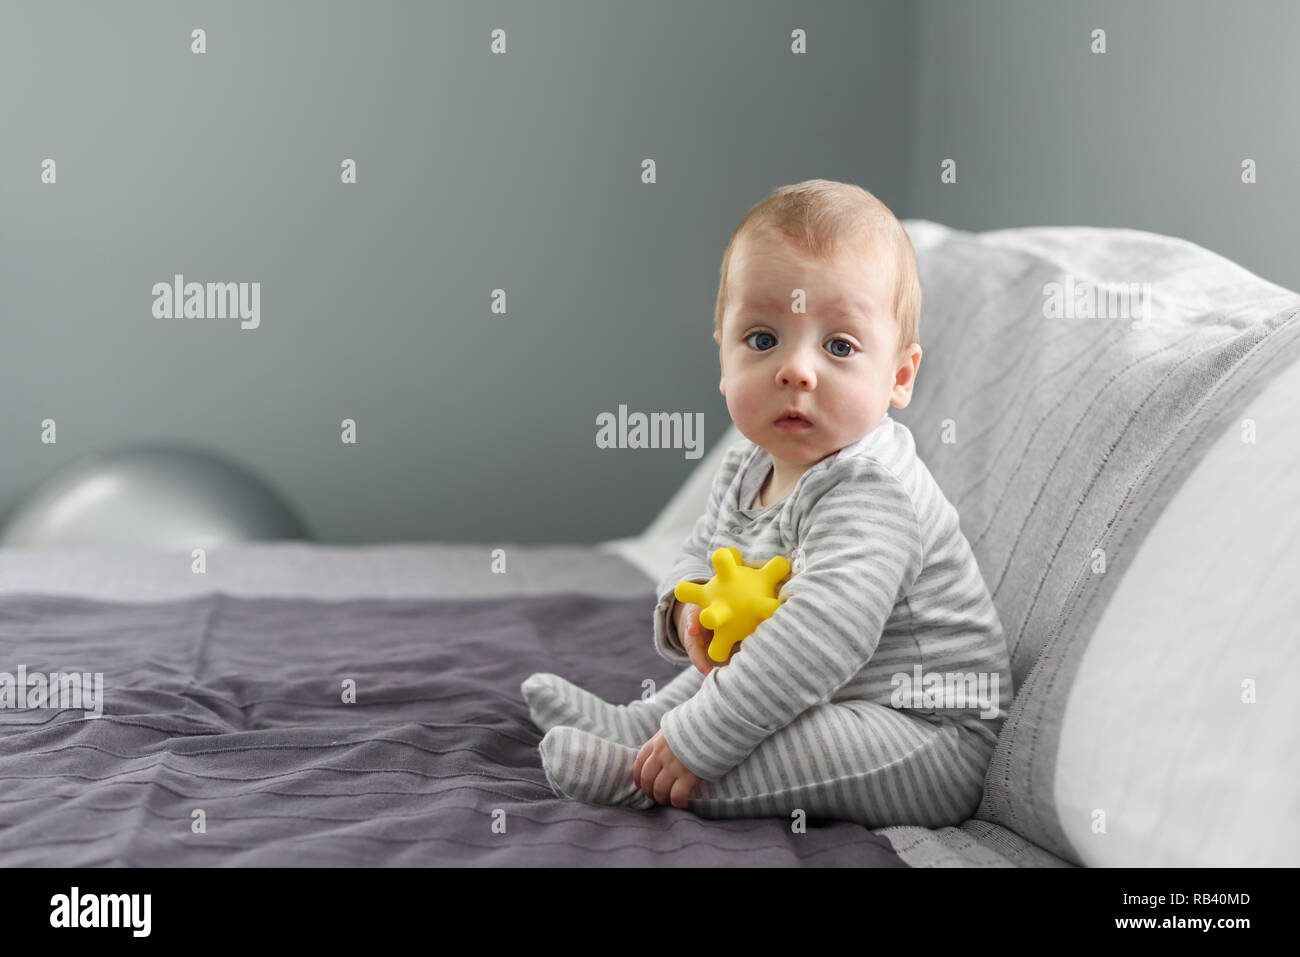 Seduta baby boy sul tappeto grigio con sfera gialla giocattolo. La maternità e il nuovo concetto di vita Foto Stock